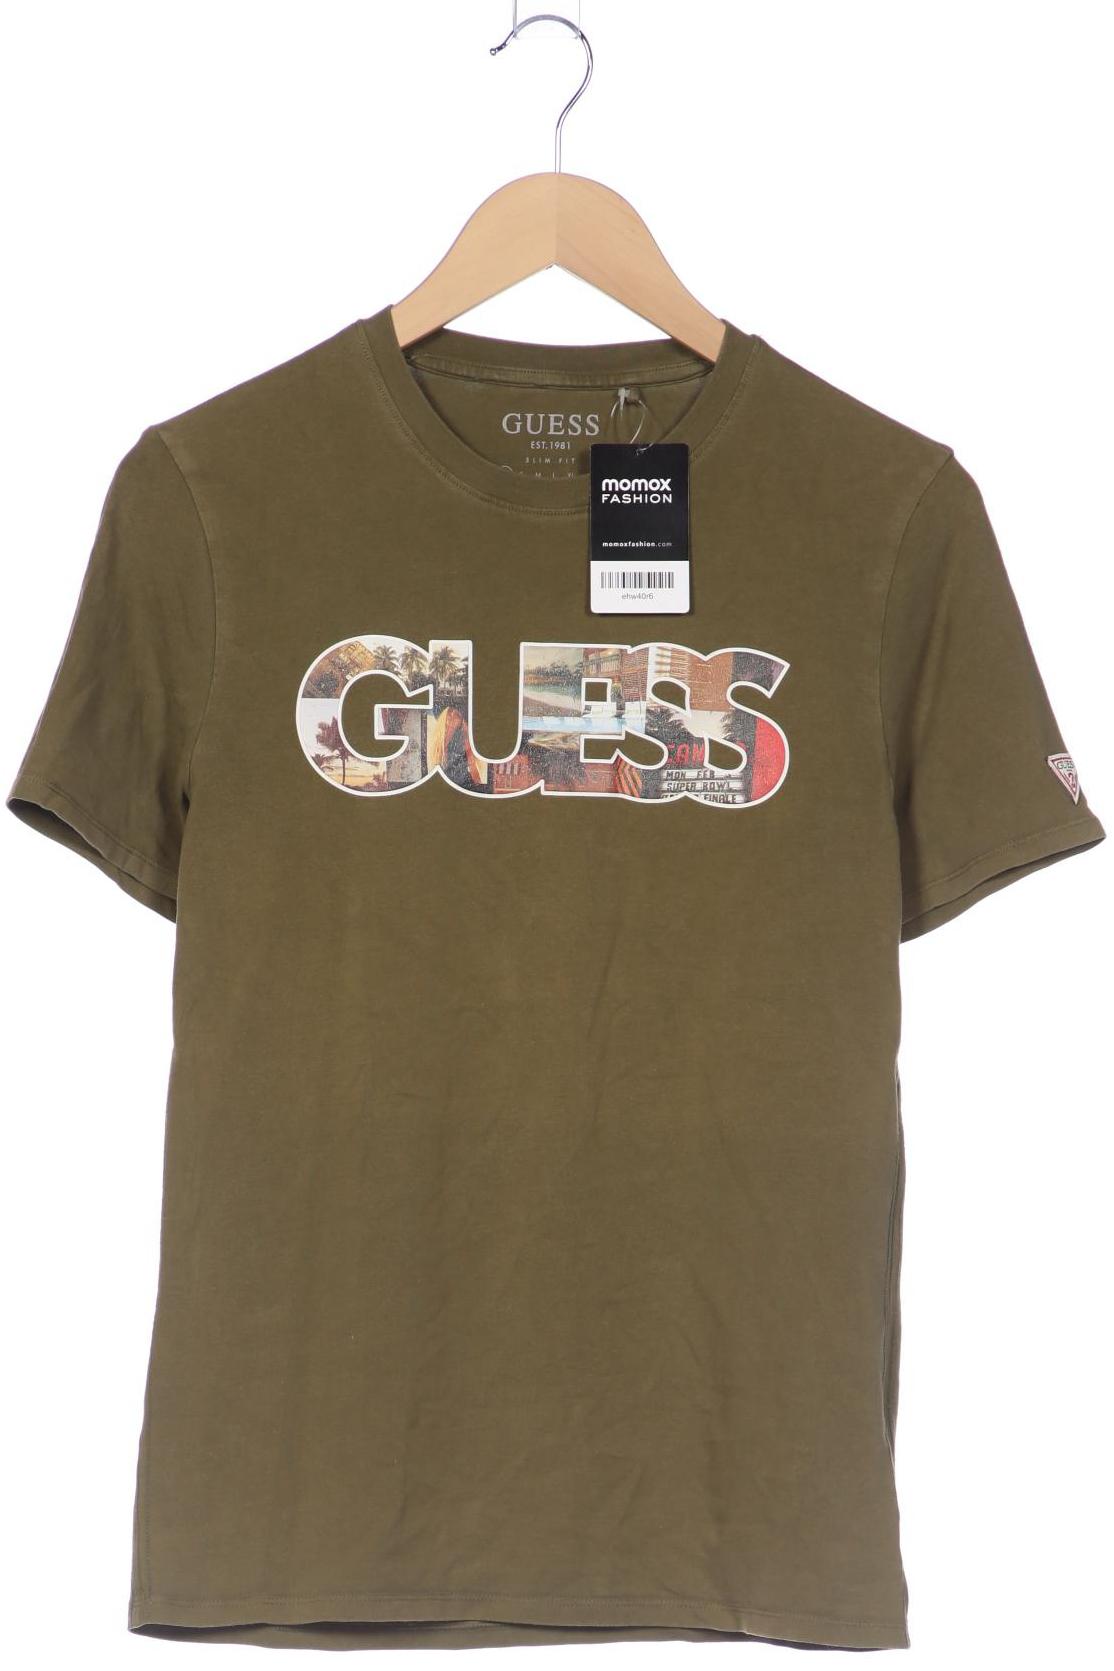 GUESS Herren T-Shirt, grün von Guess